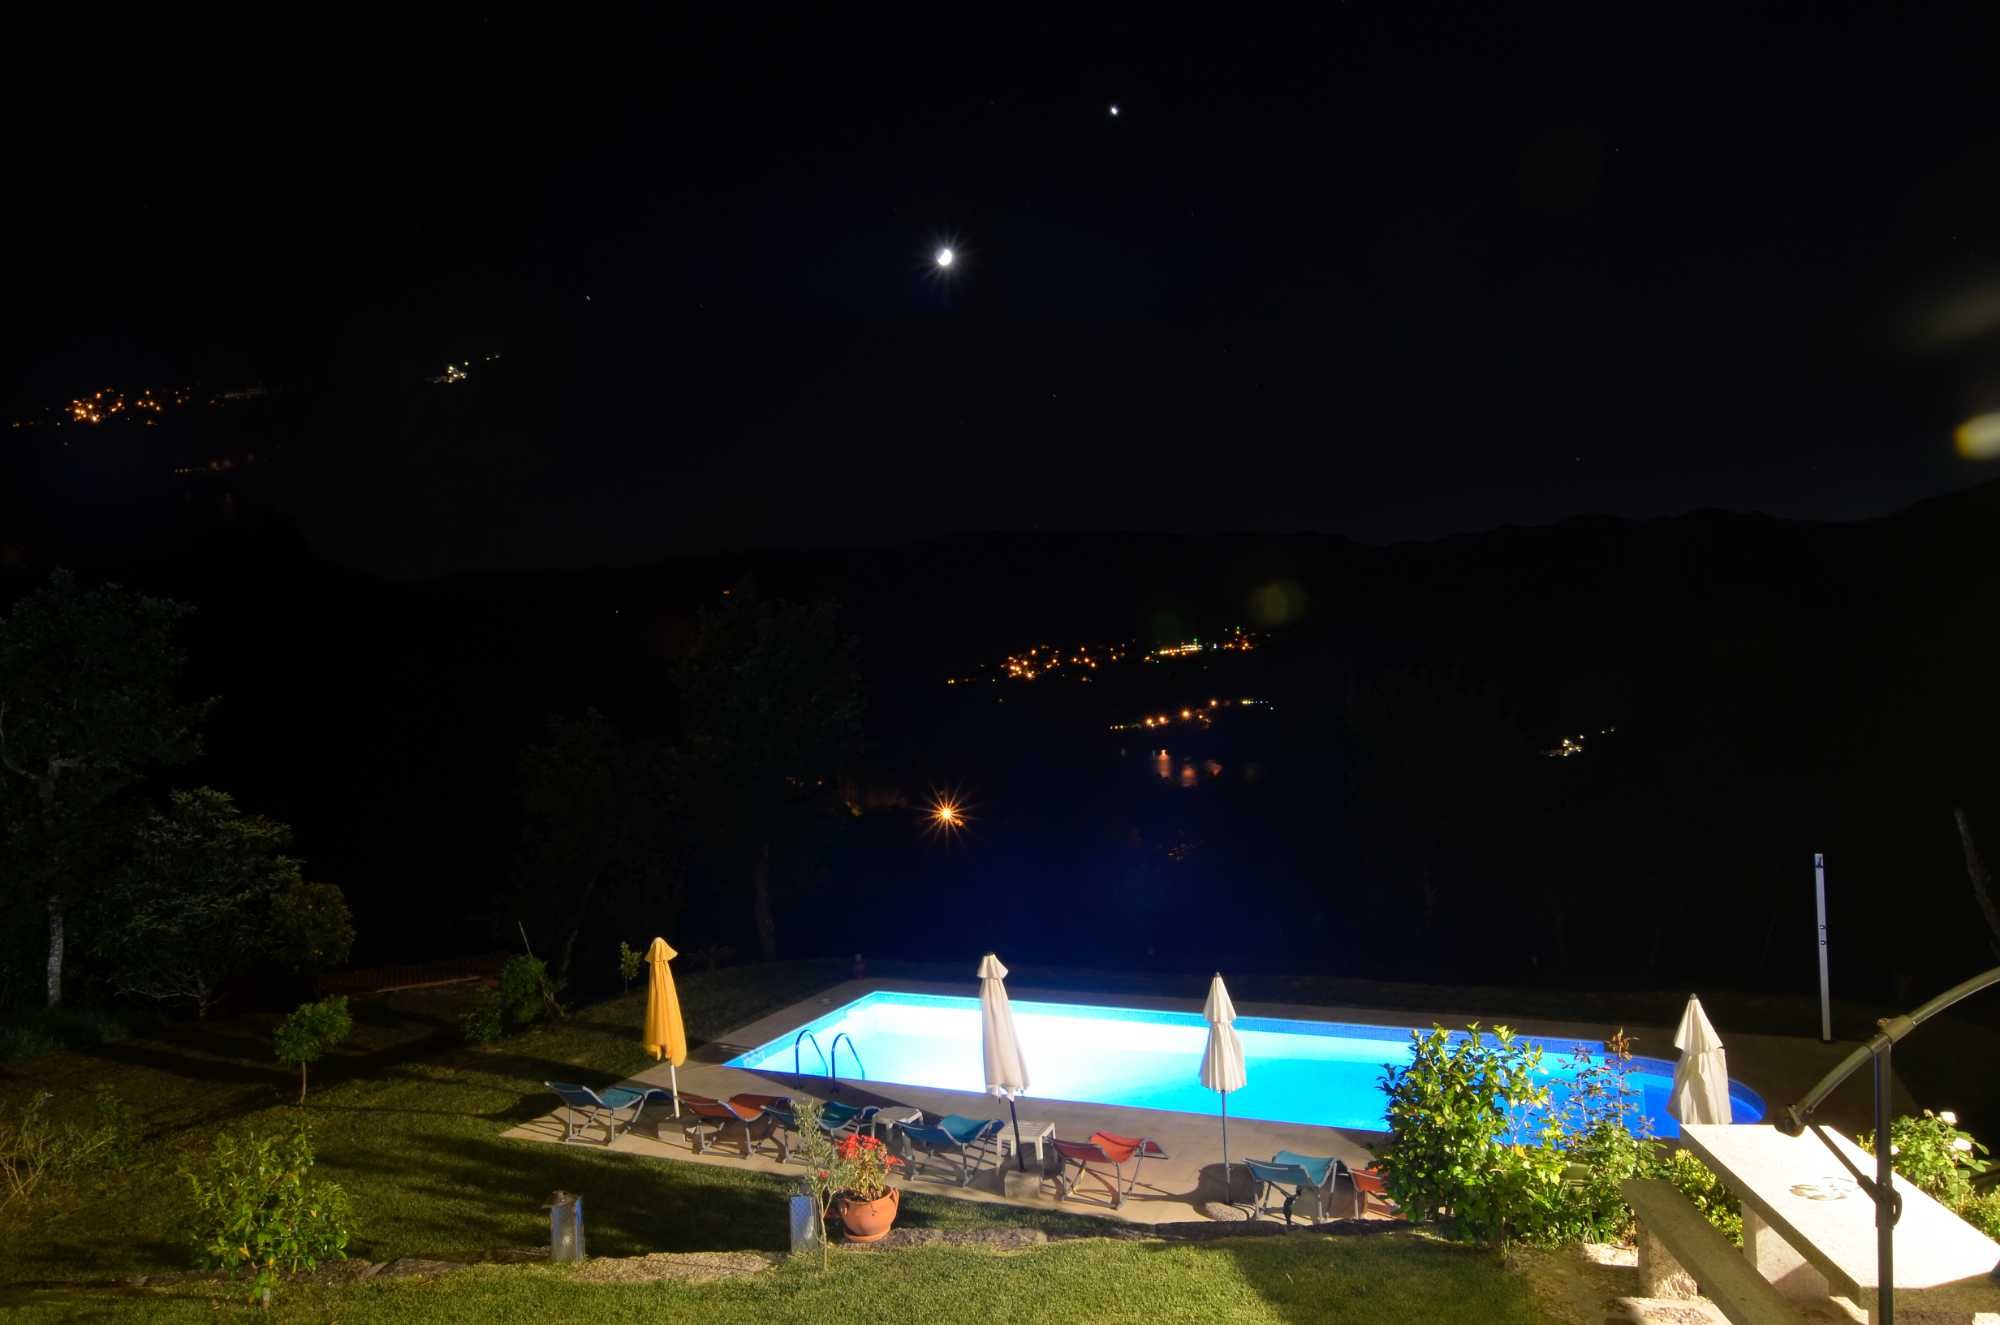 Cantinho da pedra Gerês turismo rural lindas paisagens com piscina